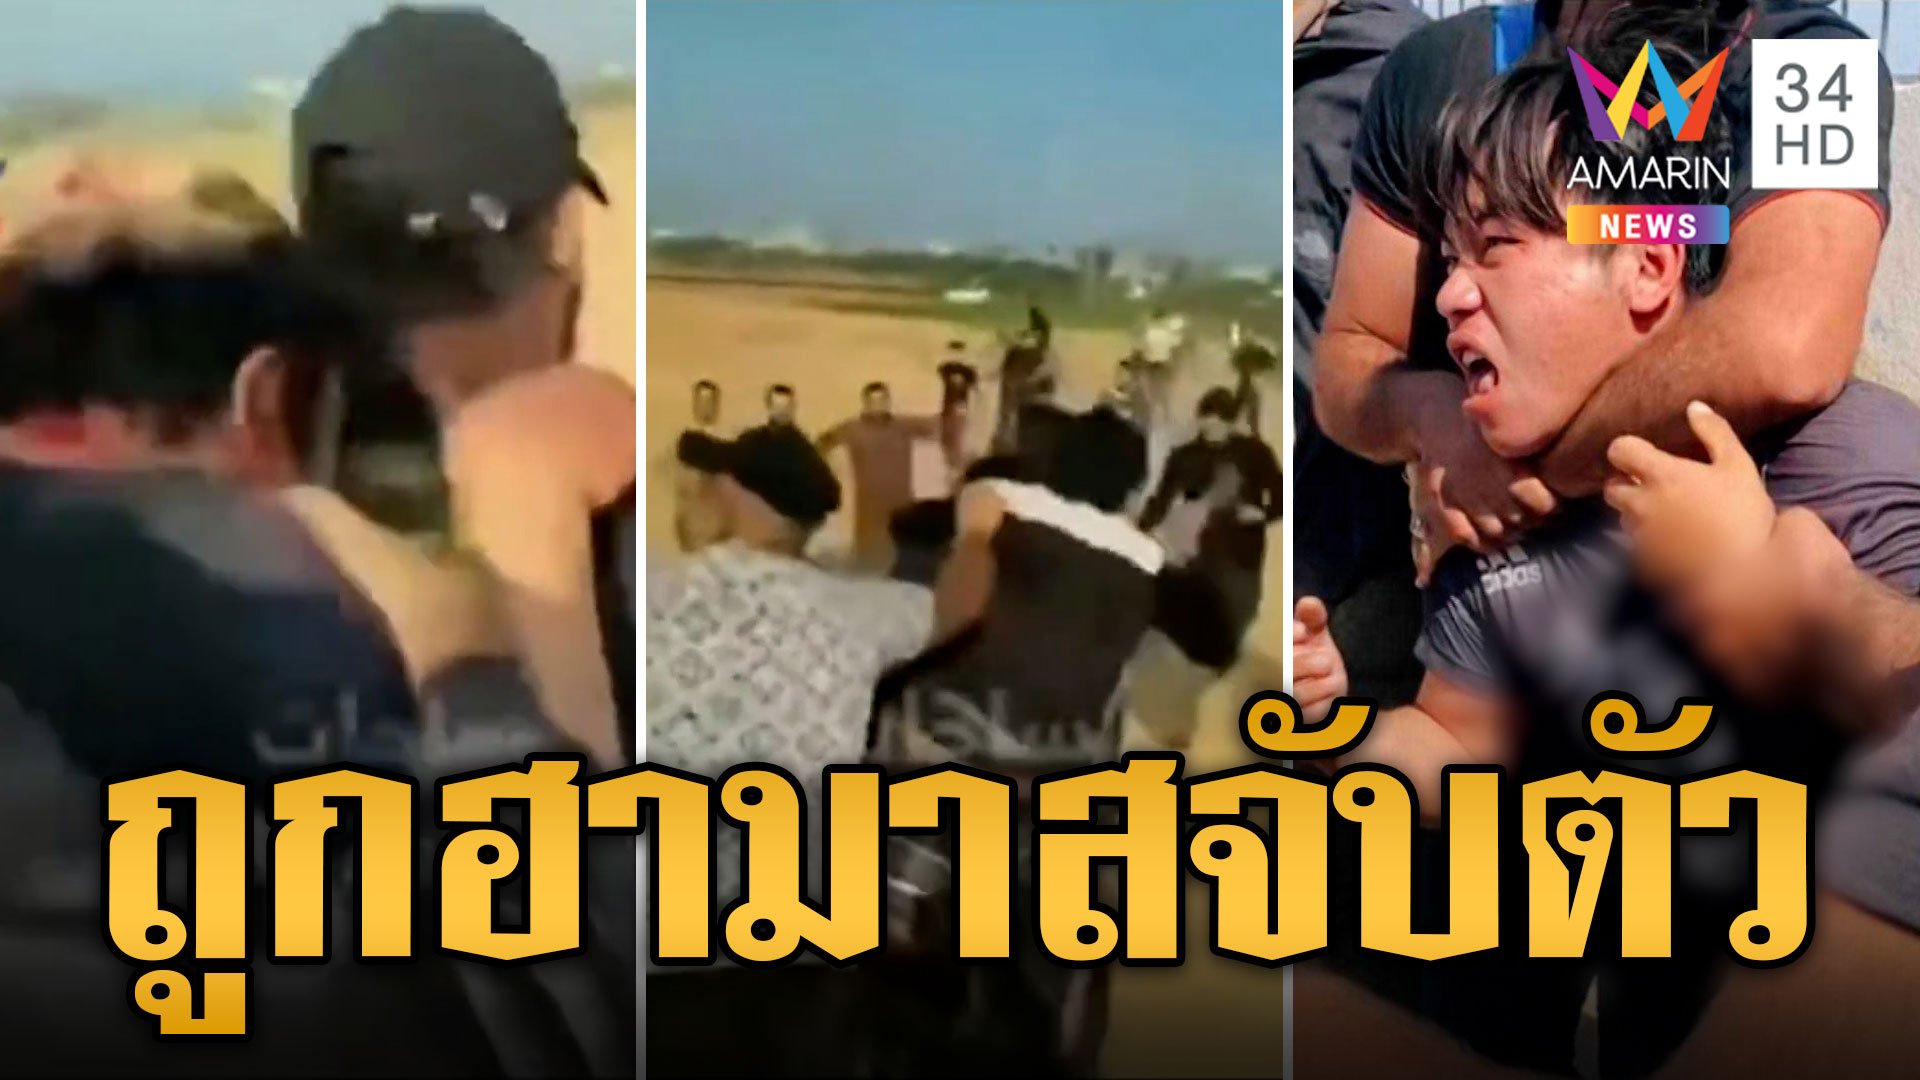 หนุ่มไทยโดนฮามาสจับตัวทำร้ายตลอดทางคล้าย "กง แซ่เล่า" แรงงานโวยนายจ้างยึดพาสปอร์ต | ข่าวอรุณอมรินทร์ | 16 ต.ค. 66 | AMARIN TVHD34